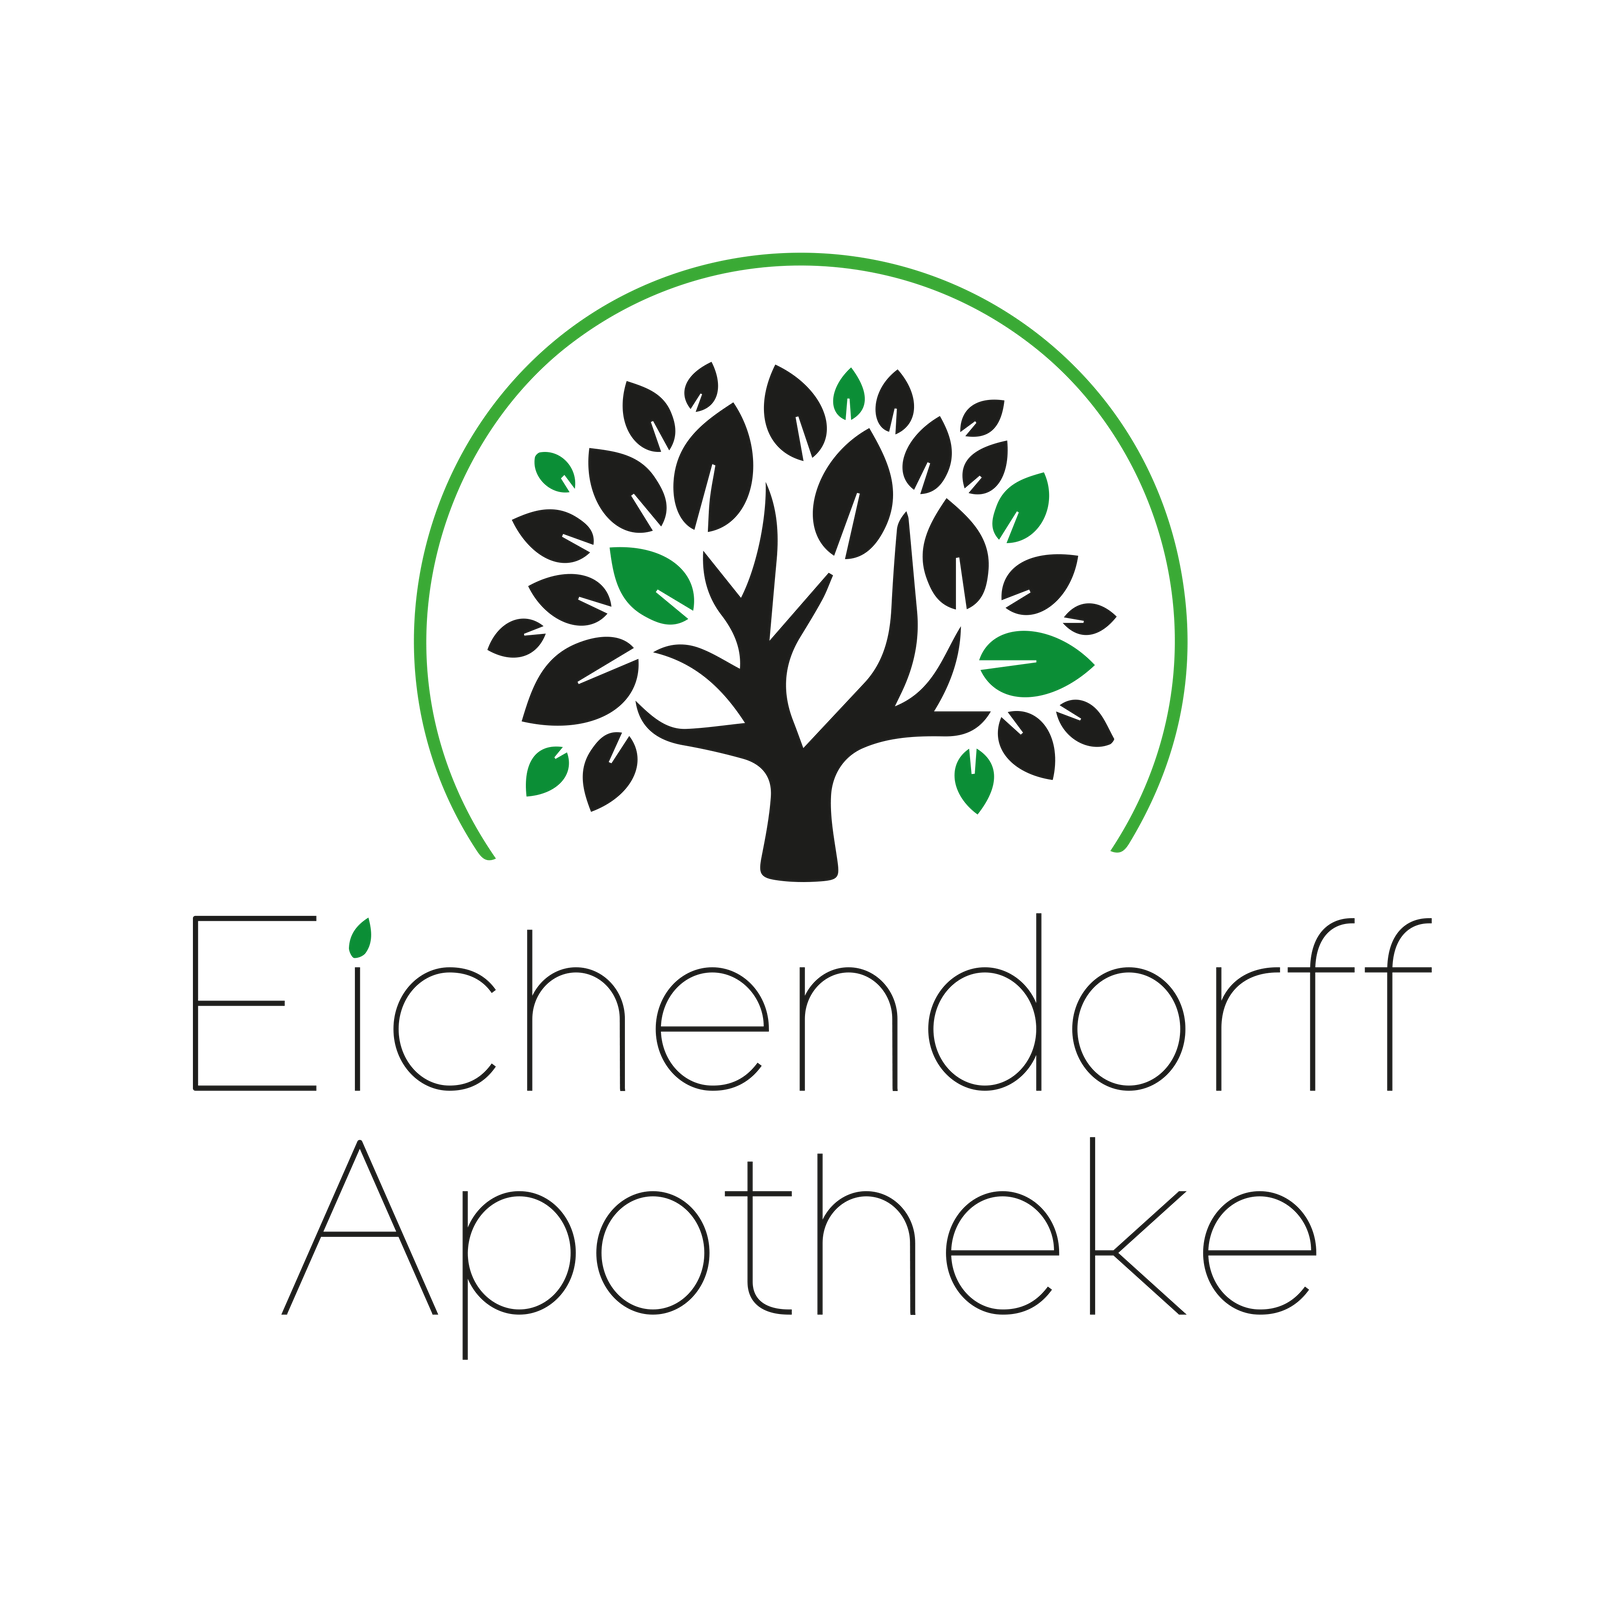 Logo der Eichendorff-Apotheke